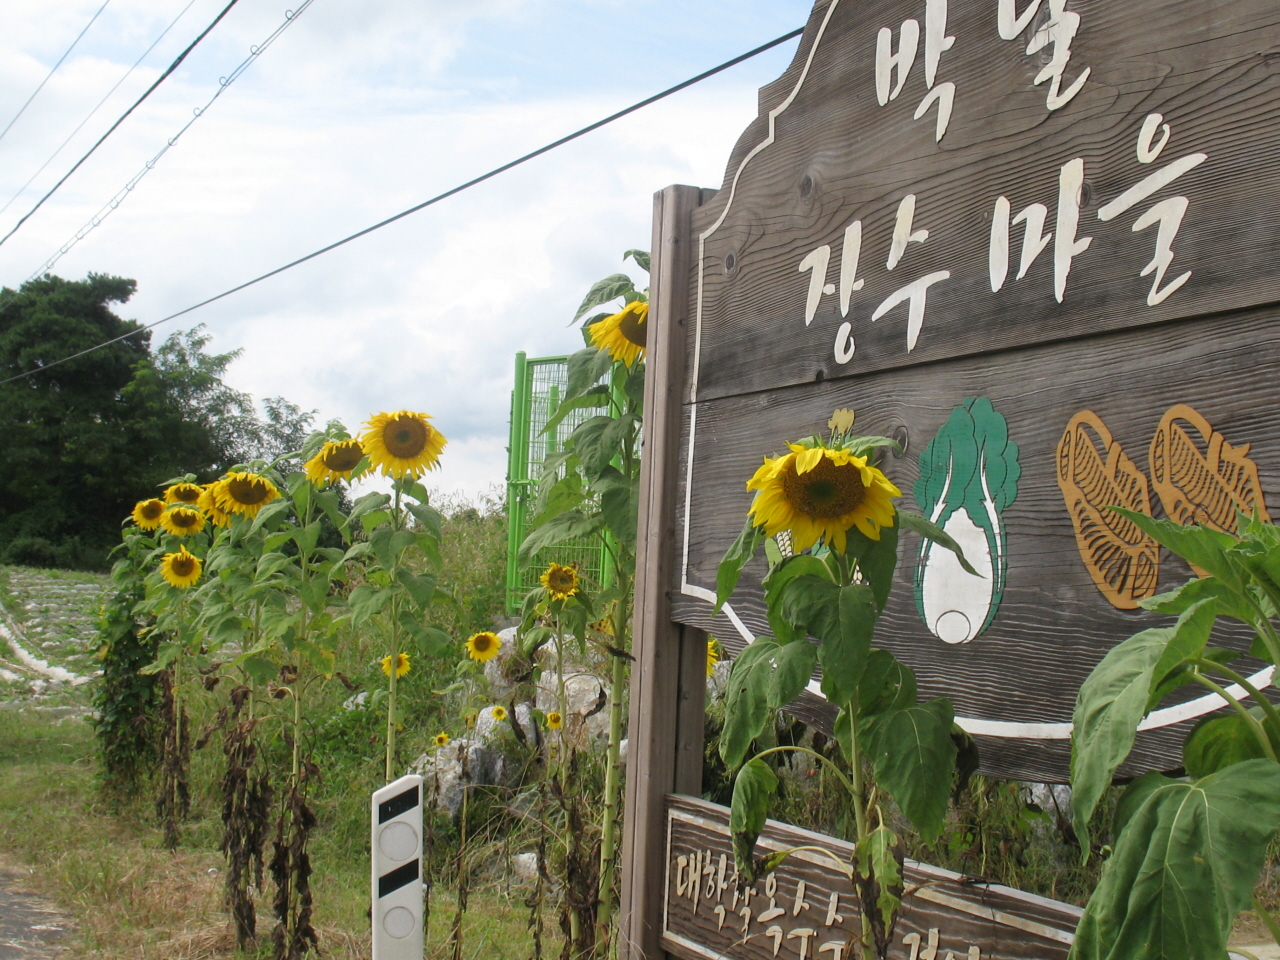 박달마을은 장수마을로 지정된 마을입니다. 아흔 넘으신 어르신부터 70~80대 어르신들이 많지요. 청년들이 심은 해바라기가 활짝 피었습니다.